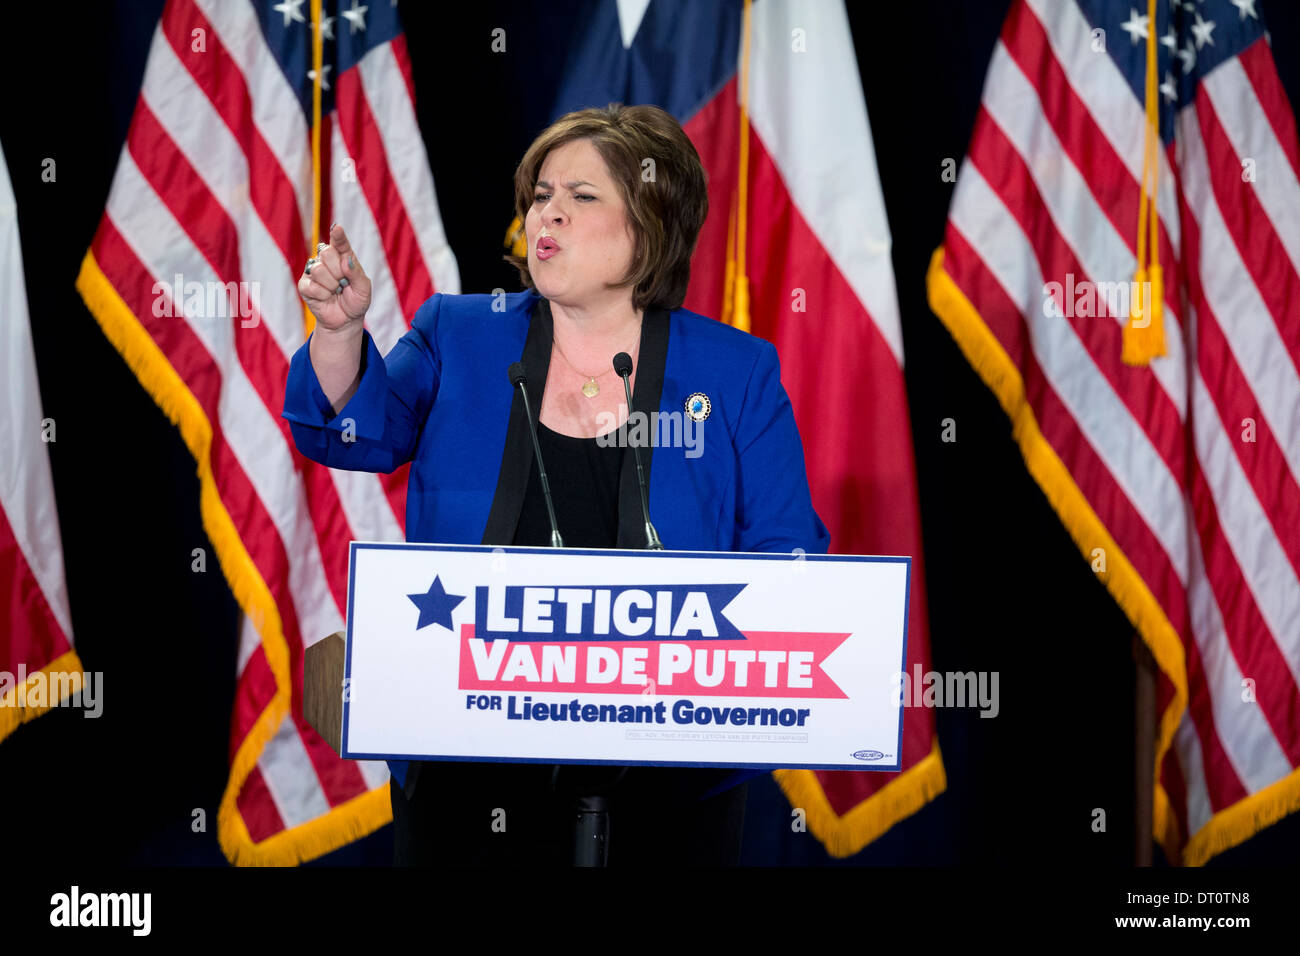 Texas stato democratico Sen. Leticia Van de Putte annuncia verranno eseguite per il luogotenente governatore in un rally in San Antonio Foto Stock